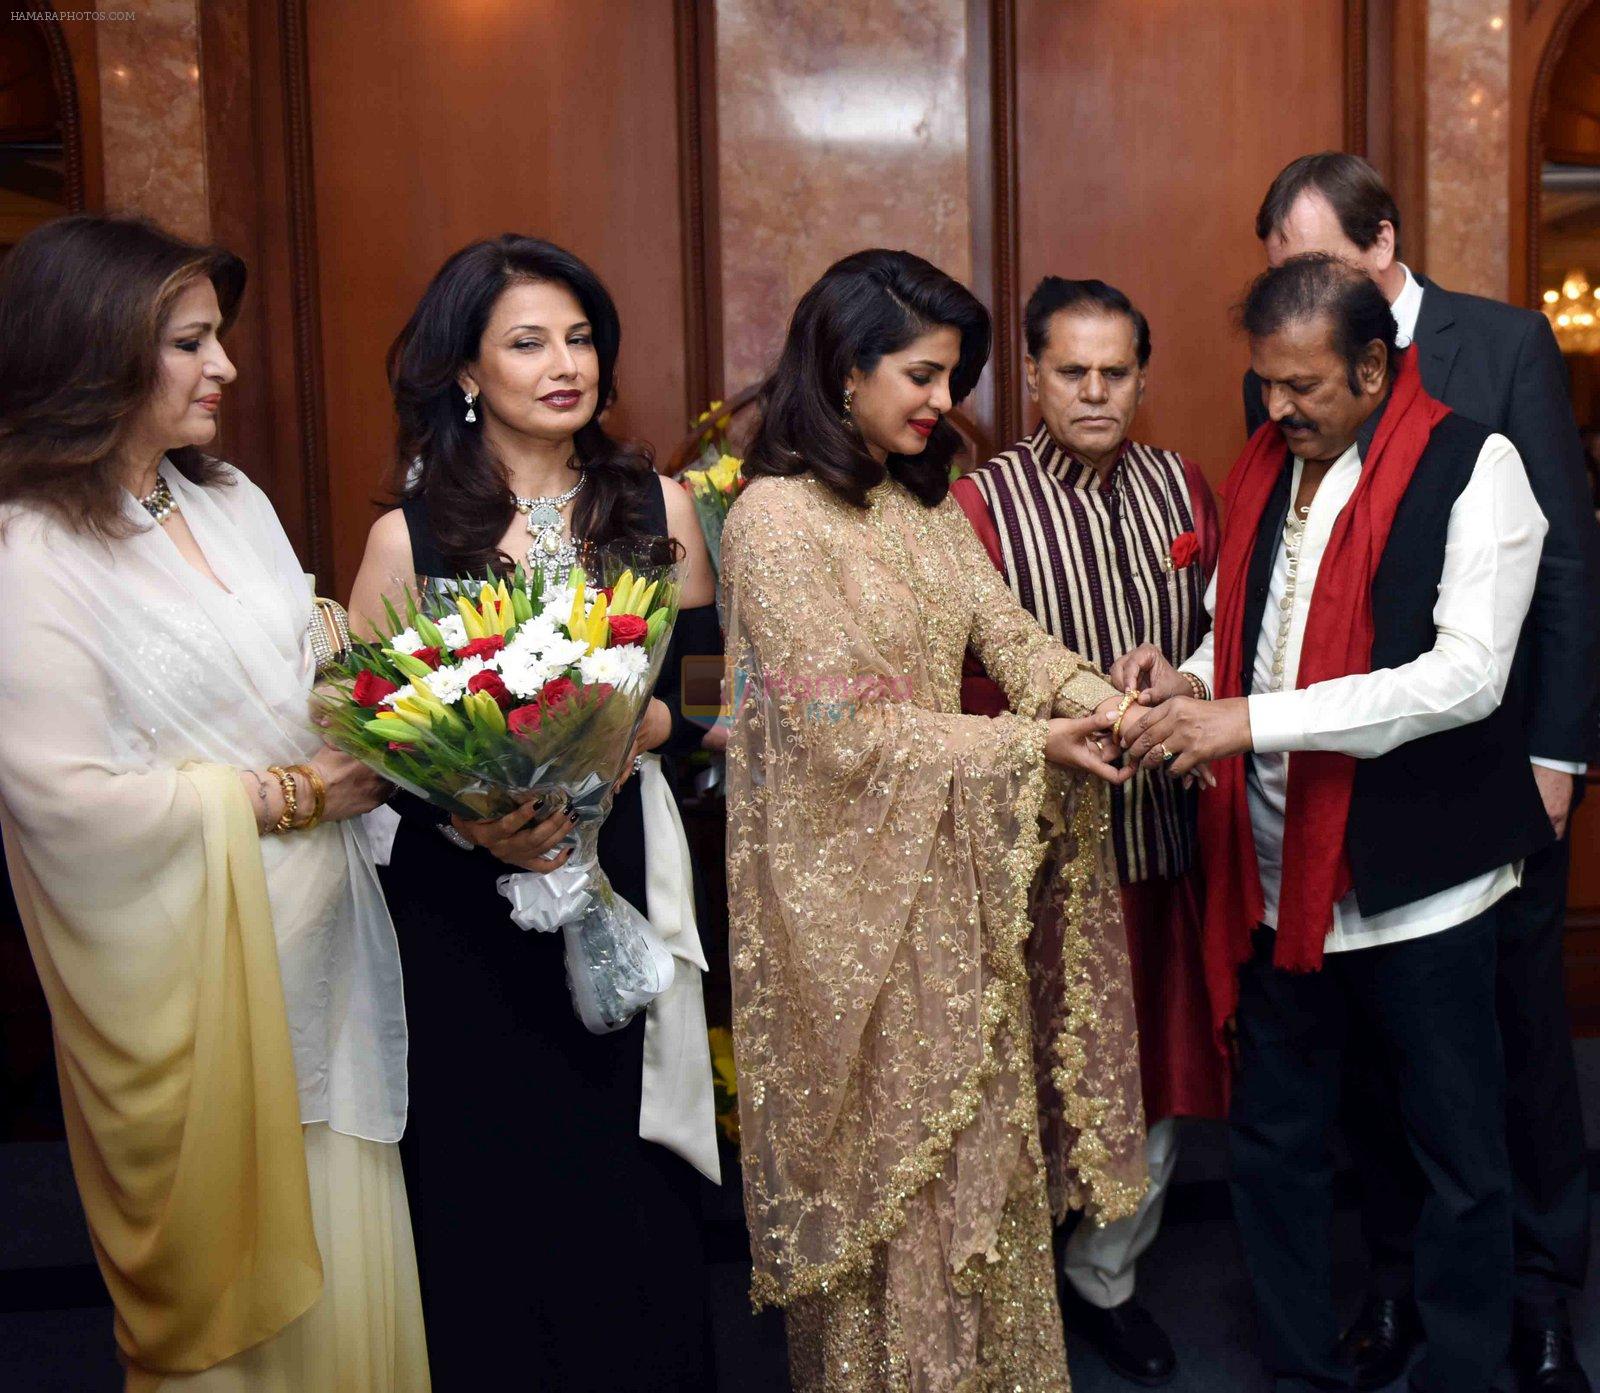 Priyanka Chopra's party in Delhi on 12th April 2016